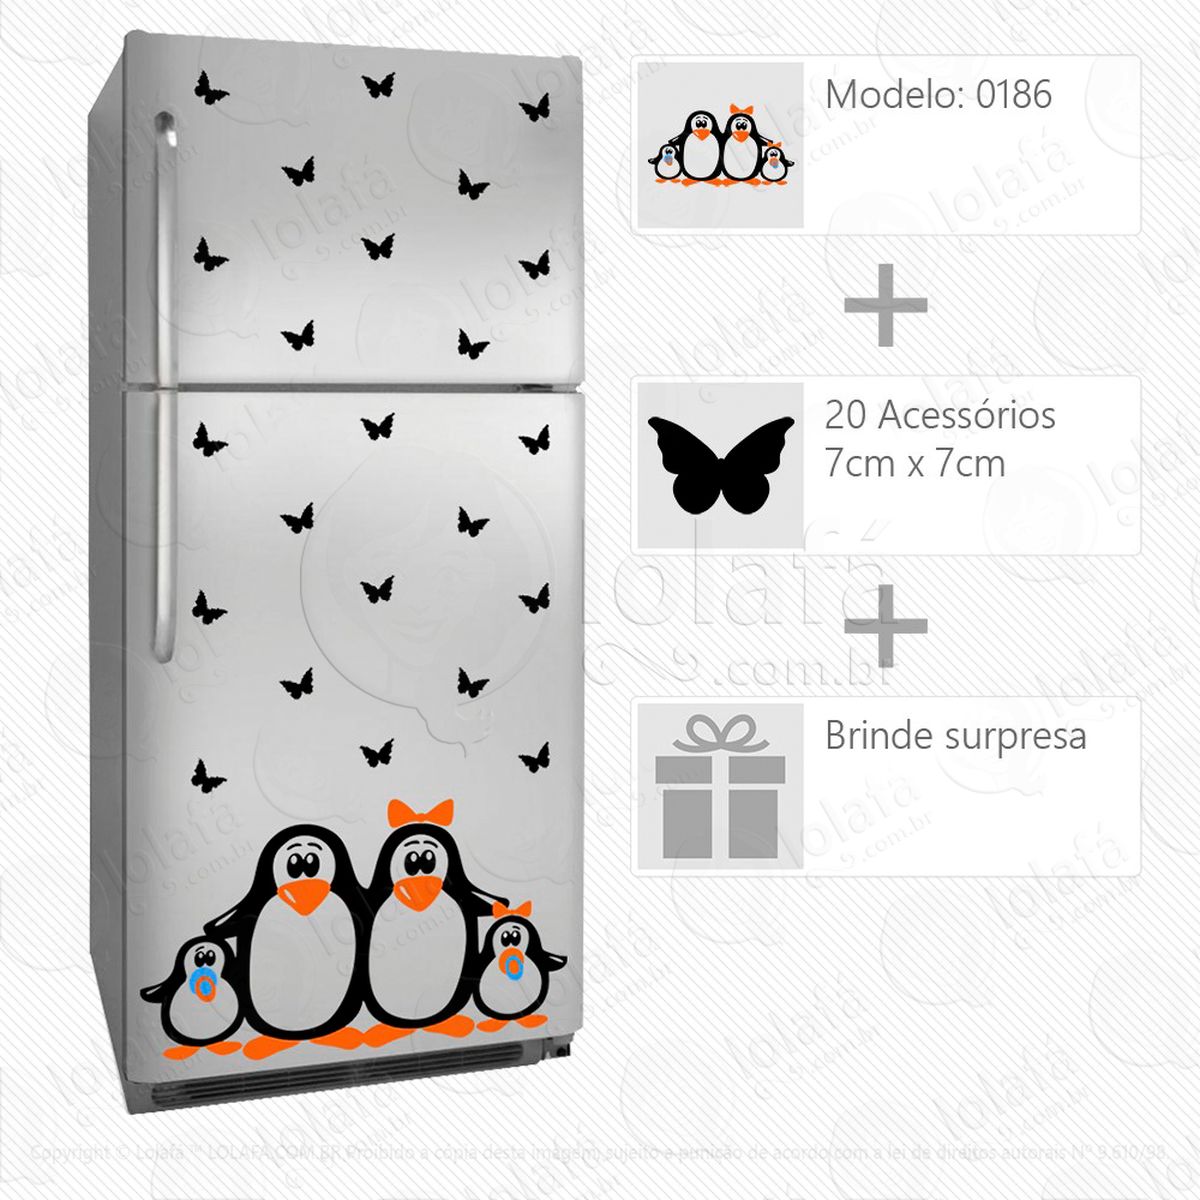 pinguins adesivo para geladeira e frigobar - mod:186